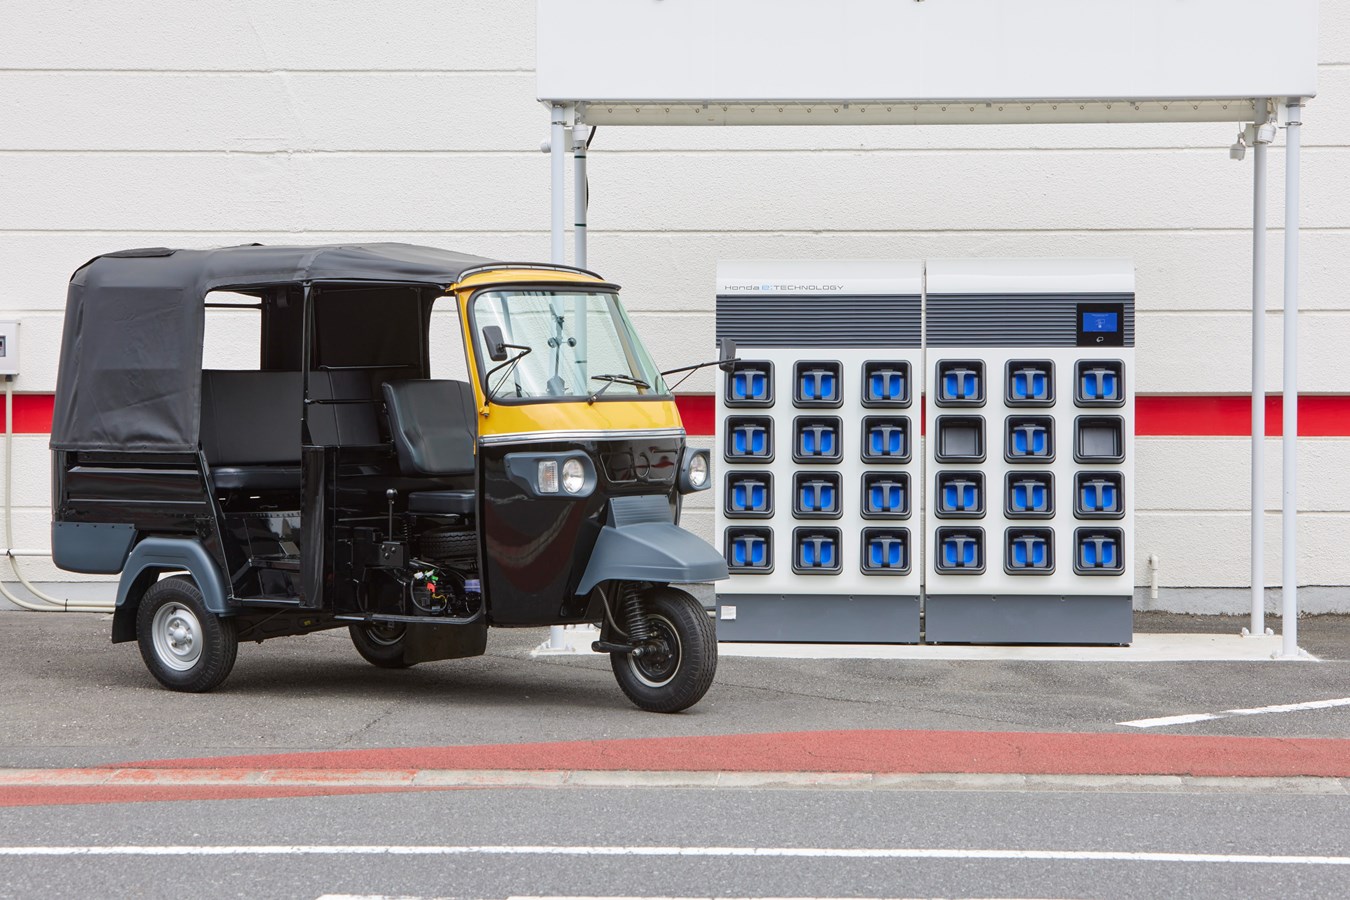 Honda lance un service de partage de batteries pour les taxis tricycles électriques en Inde au premier semestre 2022